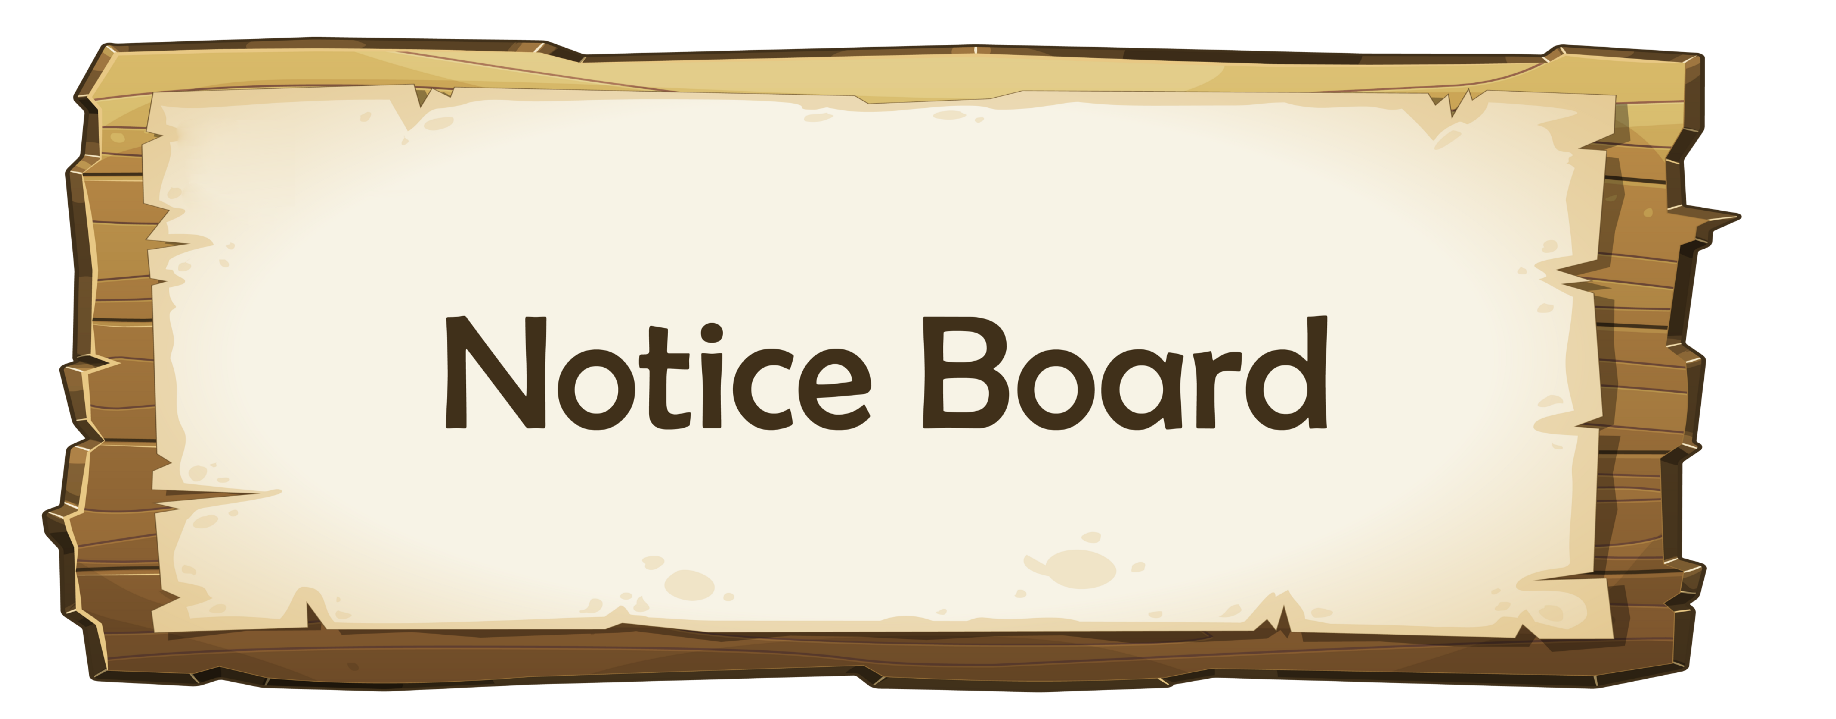 Notice Board. Иконка Notice Board. Notice Board знак. Клипарт Noticeboard.